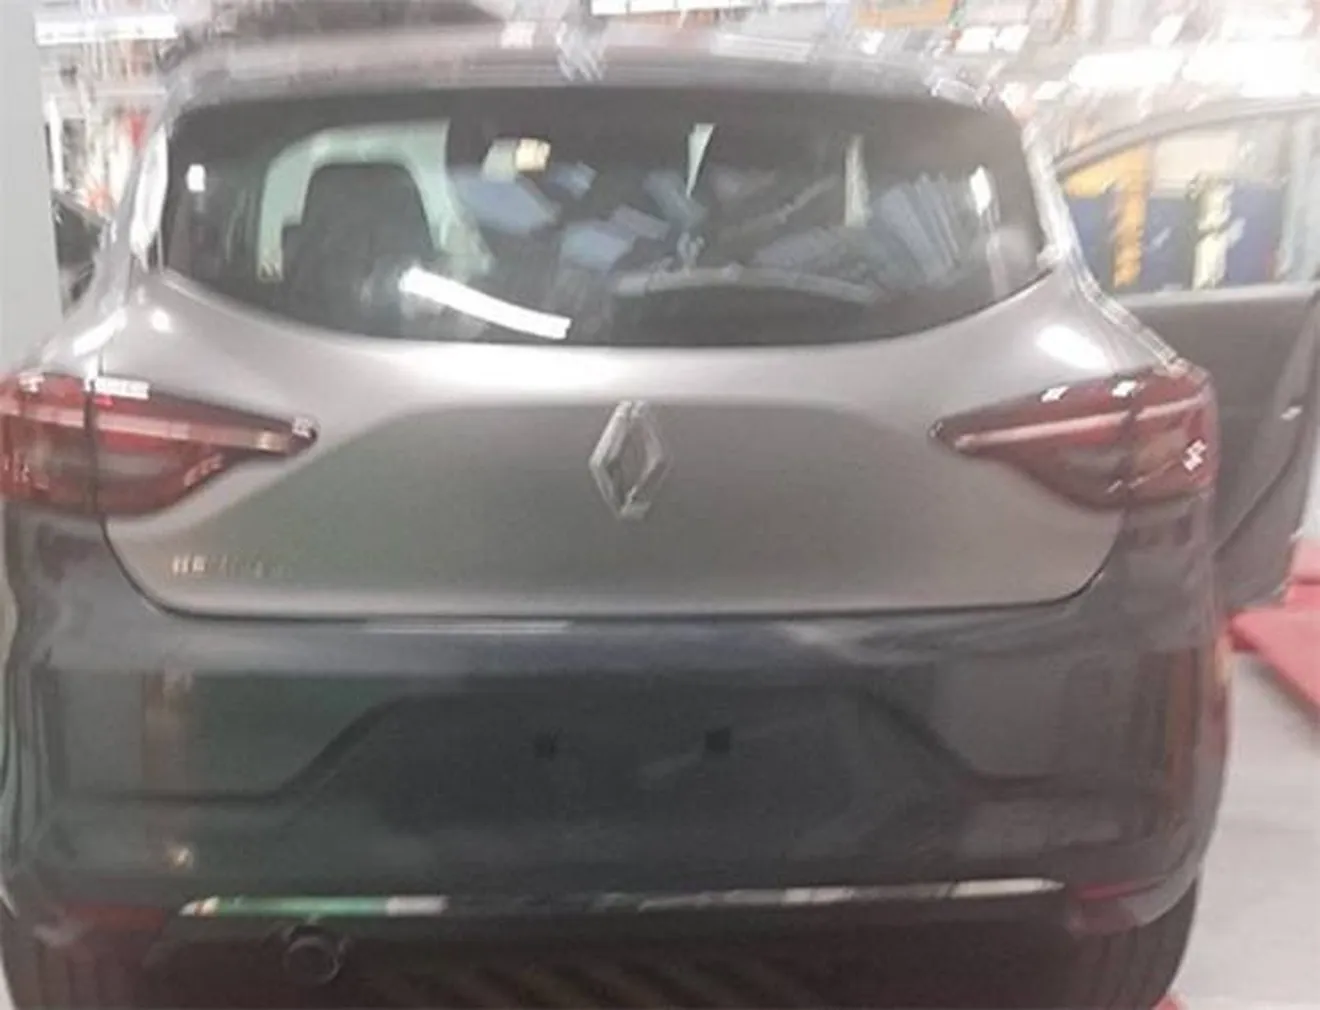 Renault Clio 2019 - foto espía posterior